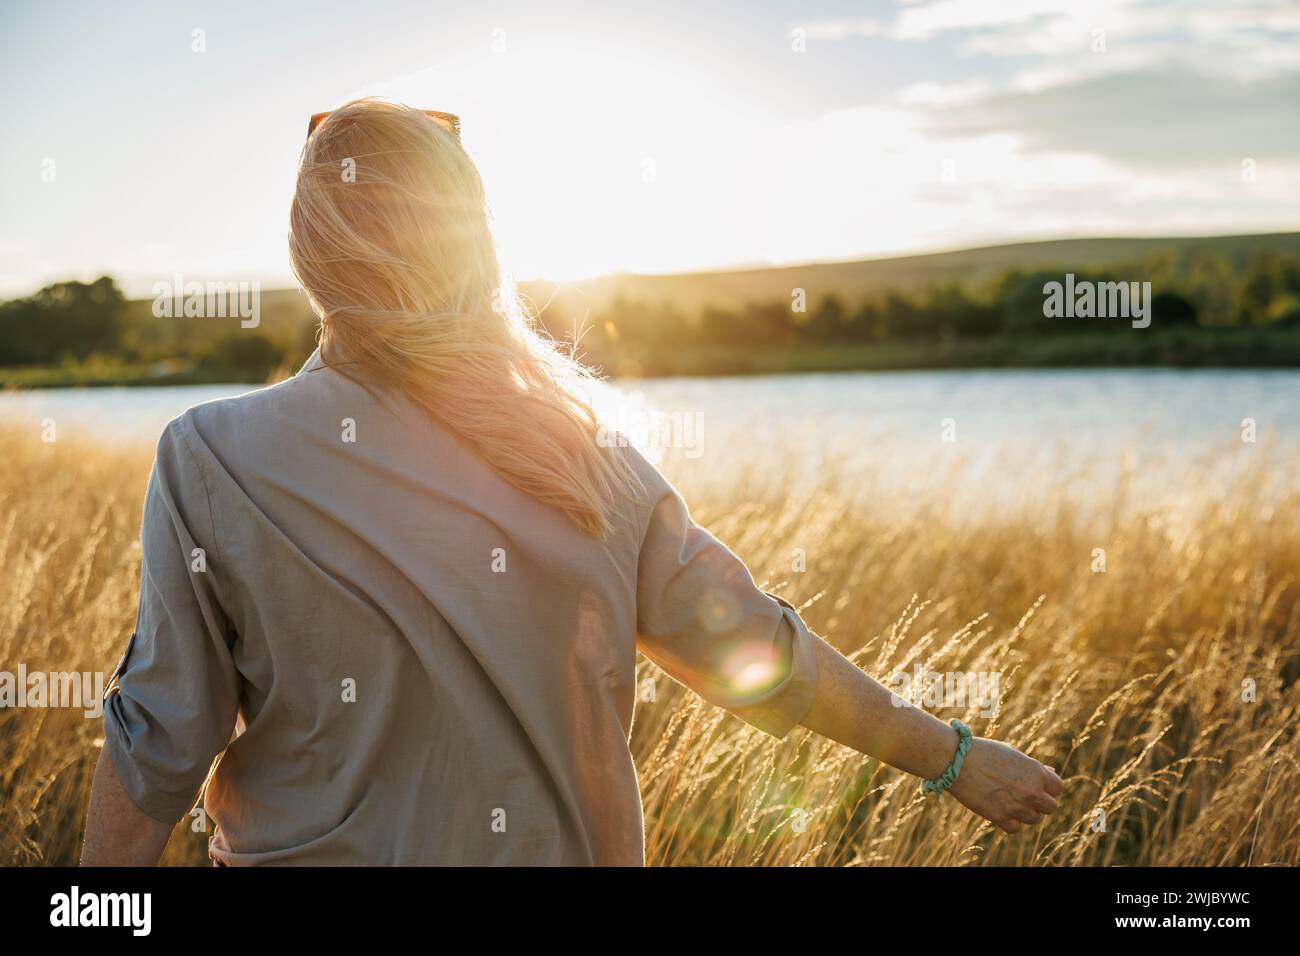 Femme détendue profitant de l'air frais au lac venteux pendant le coucher du soleil. Émerveillement, pleine conscience et joie de ce moment en plein air Banque D'Images